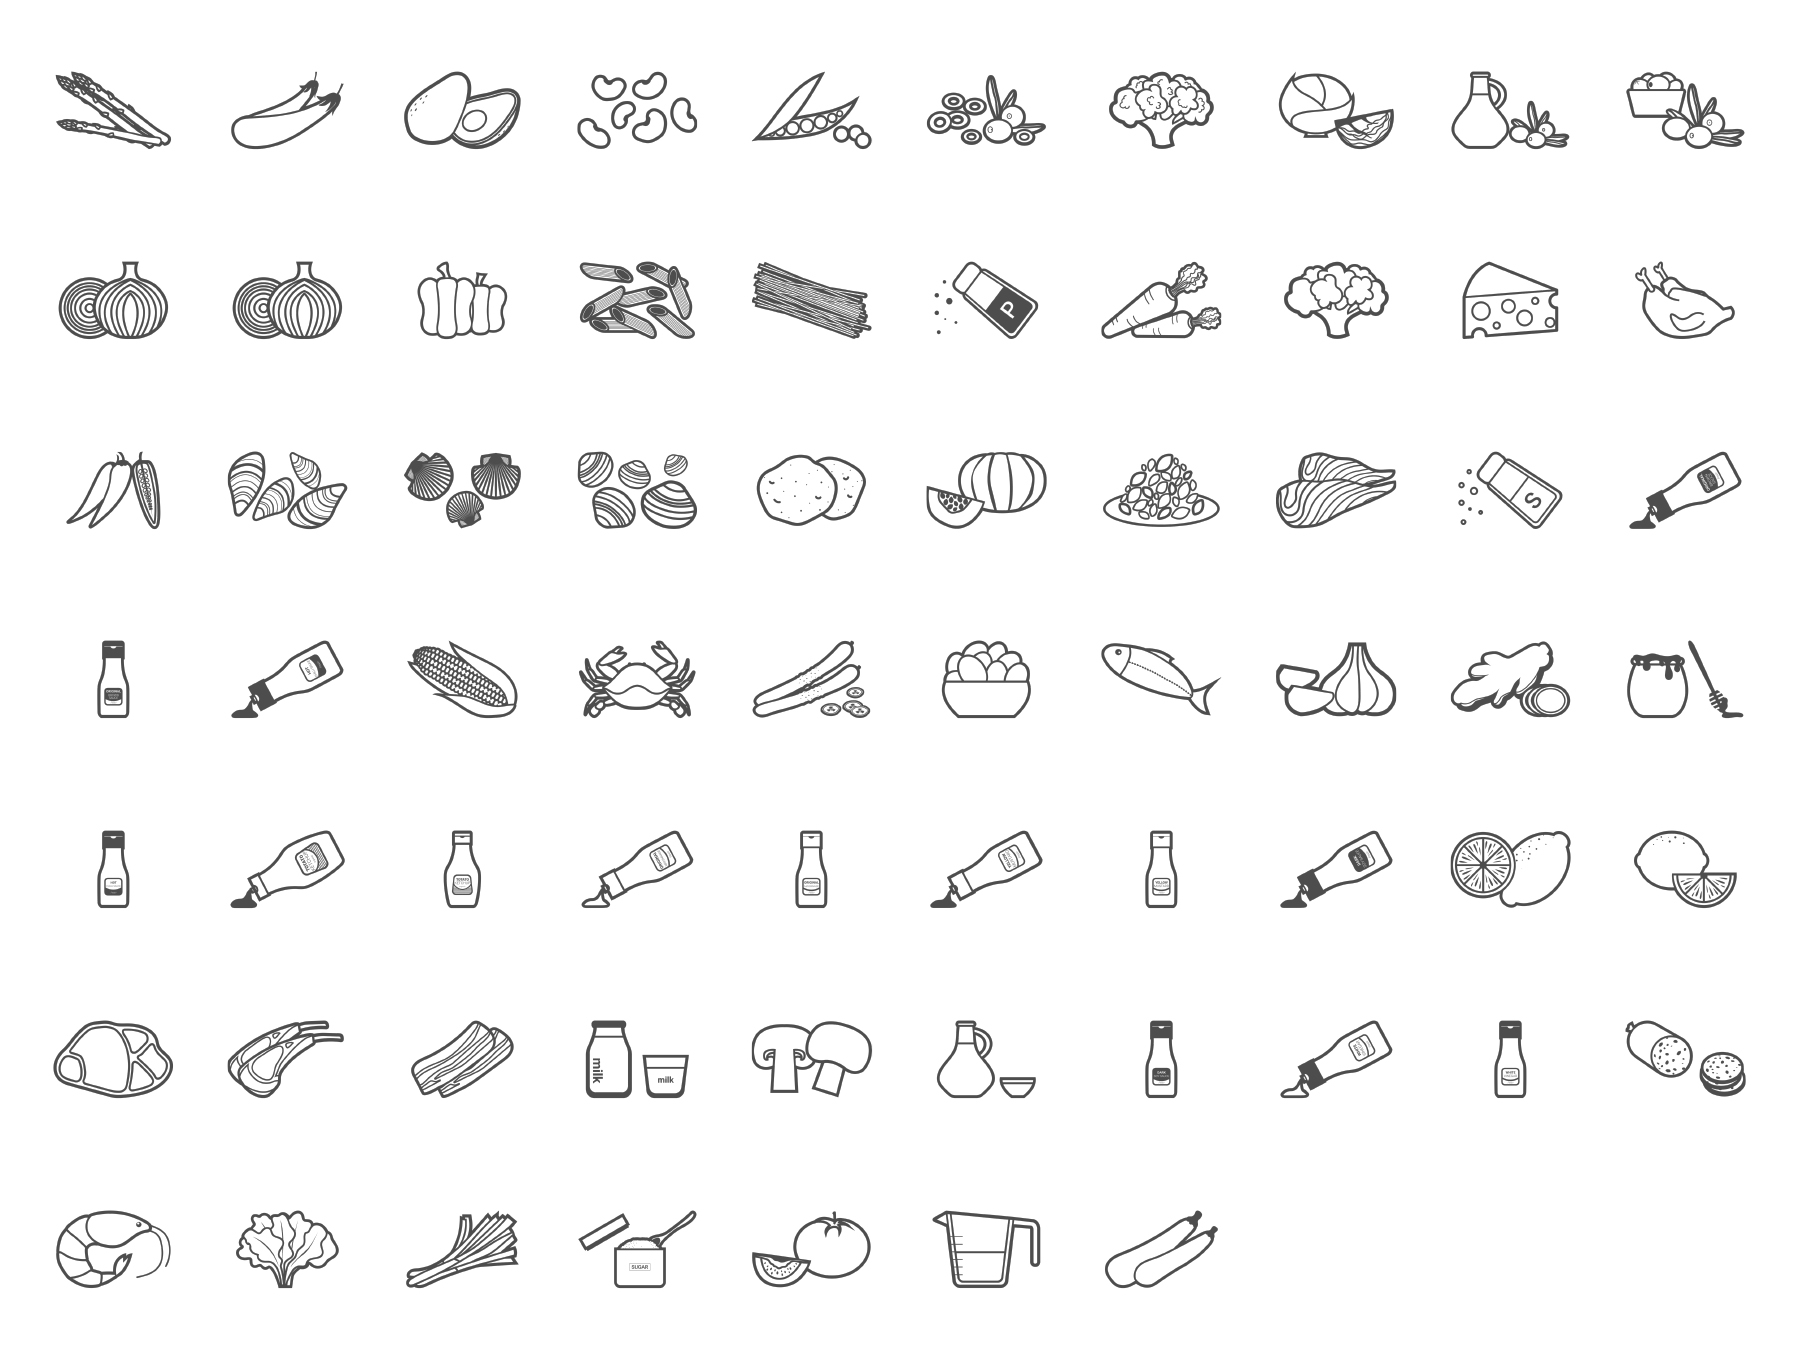 蔬菜线型图标套装下载[SVG]插图(2)